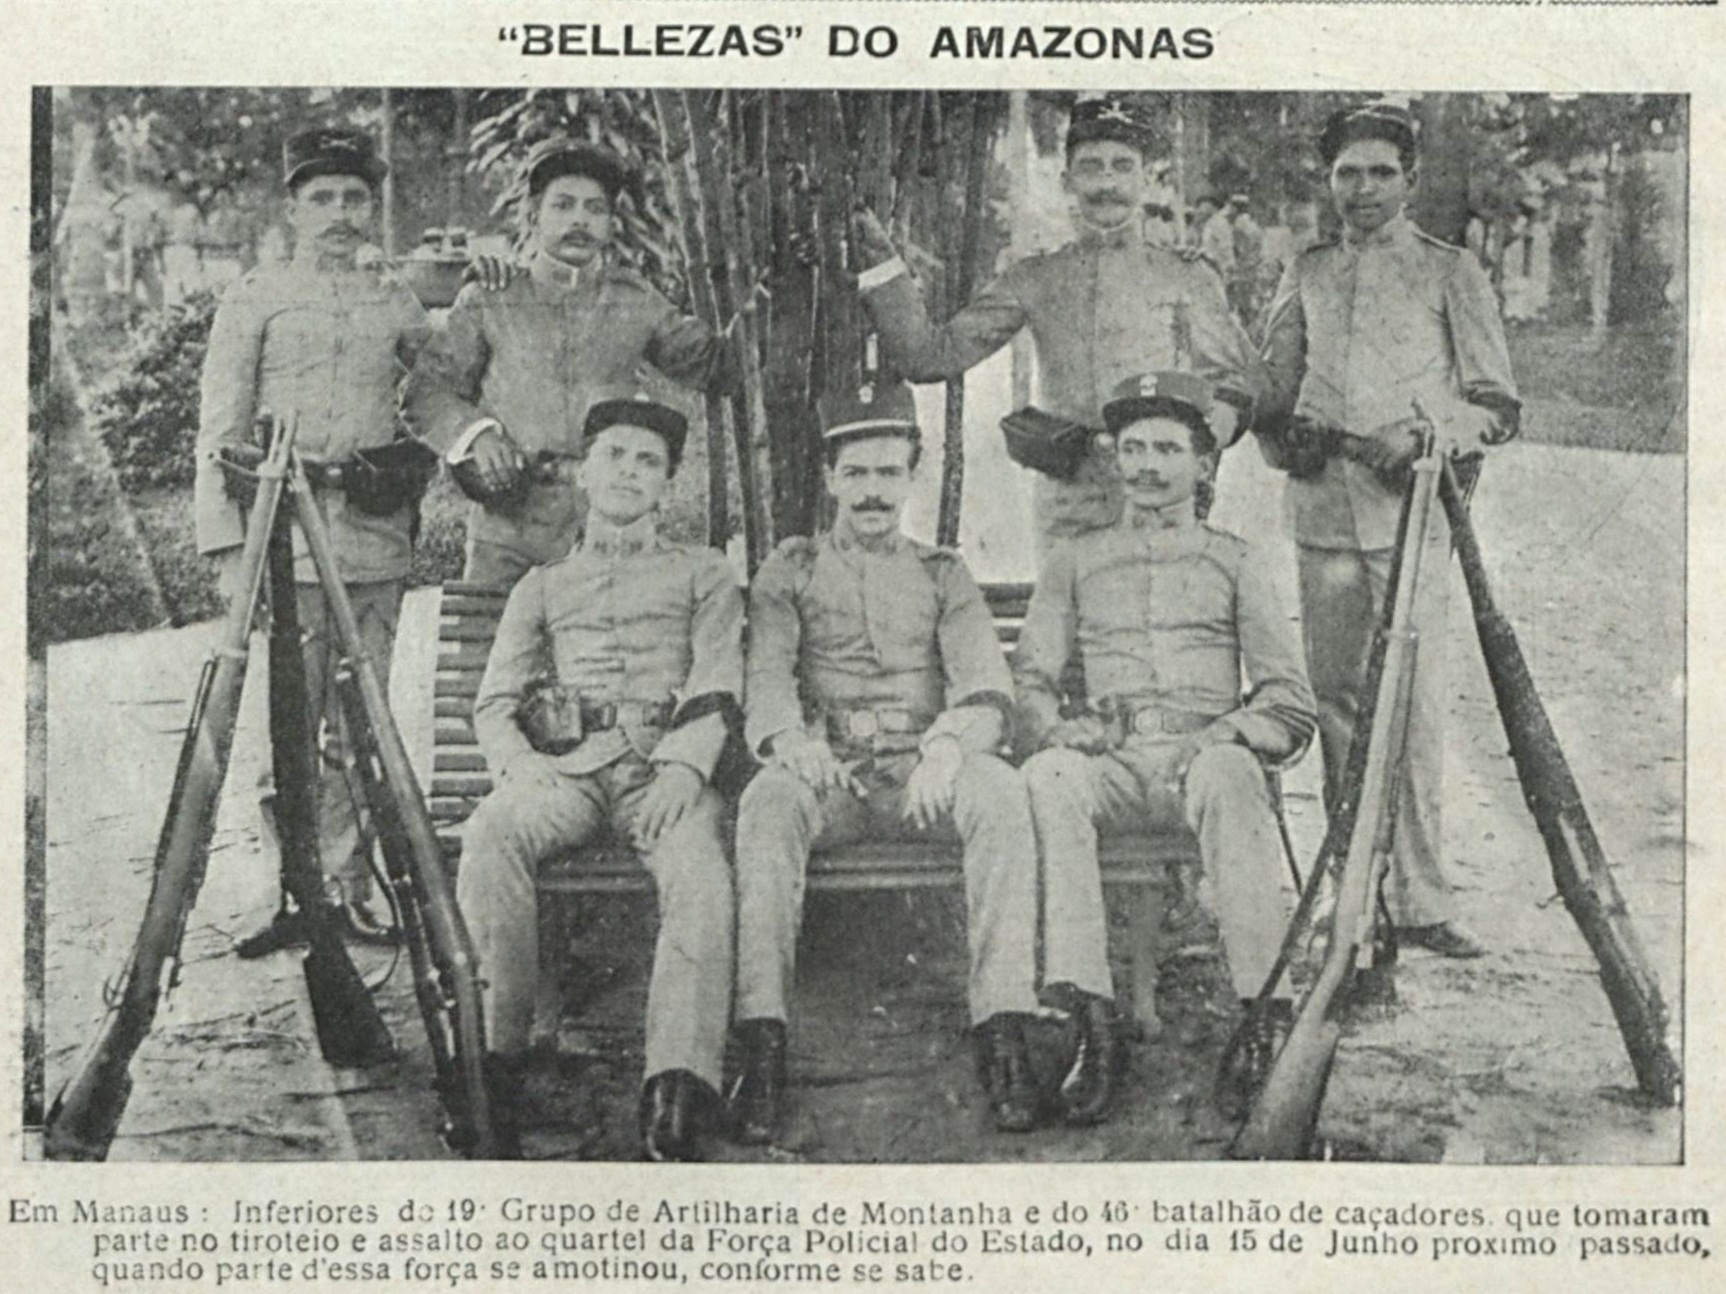 Alguns membros da Força Policial do Amazonas